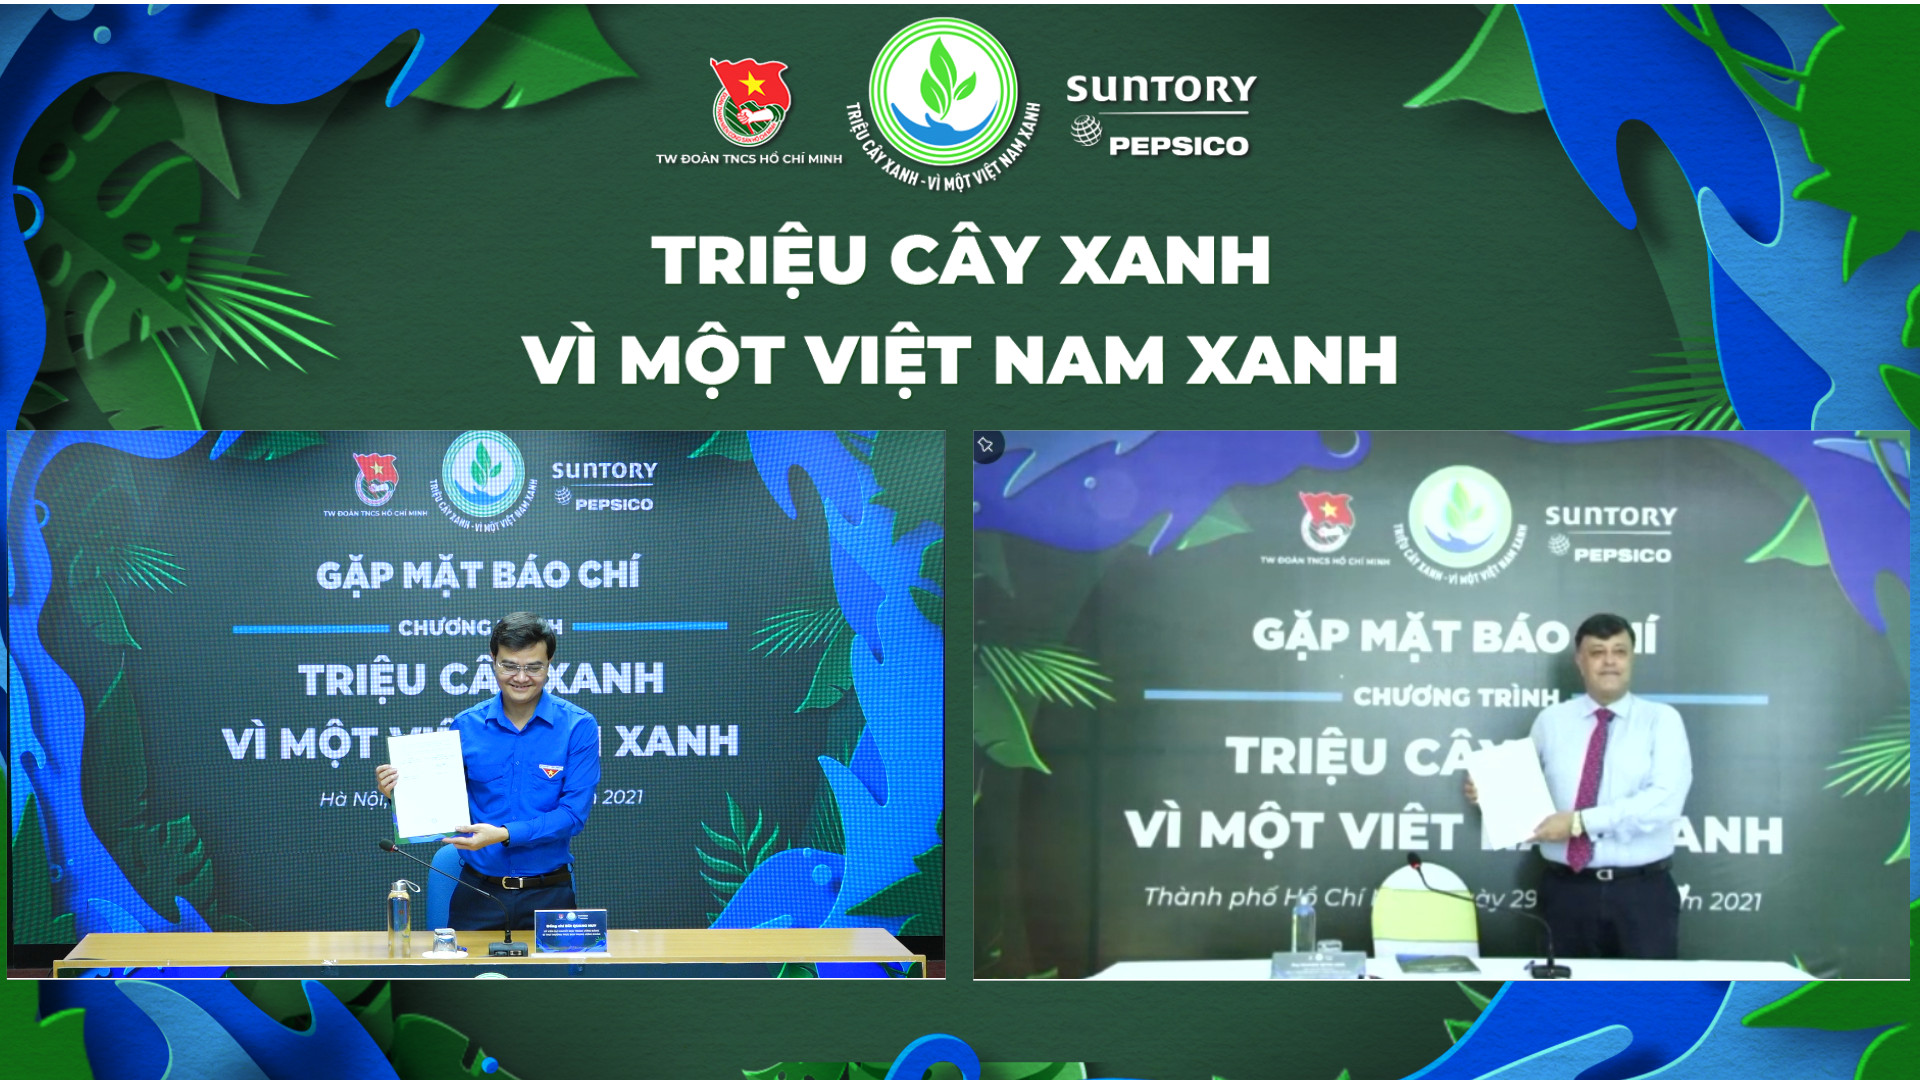 Suntory PepsiCo Việt Nam phát động chương trình “Triệu cây xanh - Vì một Việt Nam xanh” 